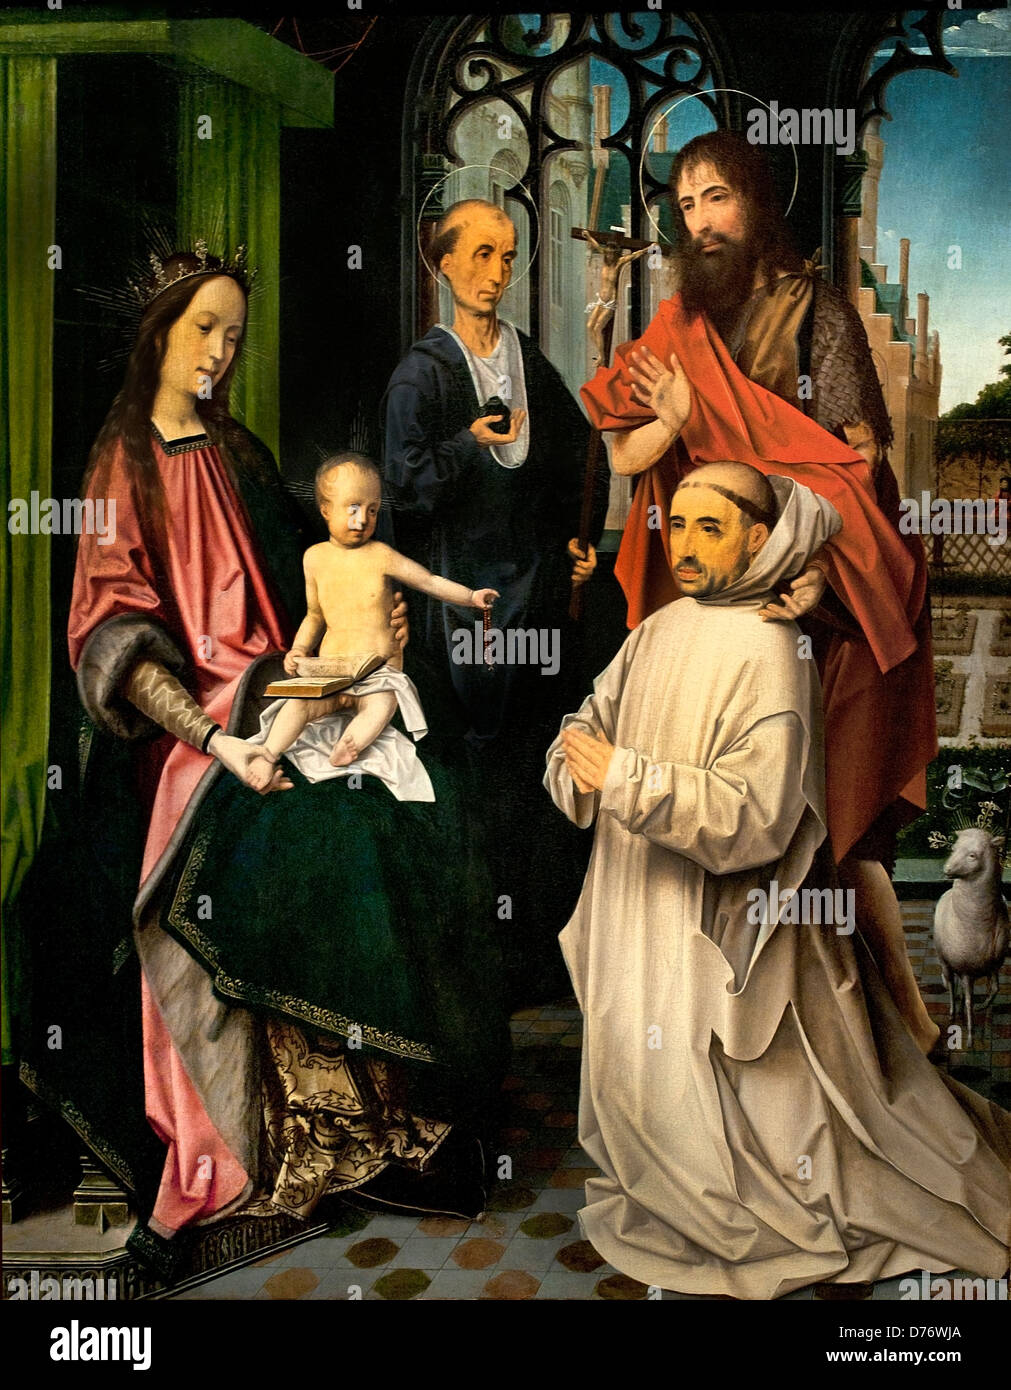 Maria und Christus thront, mit Hieronymus, John the Baptist und ein Kartäuser-Mönch 1510 Jan Provoost 1510 Niederlande Niederlande Stockfoto